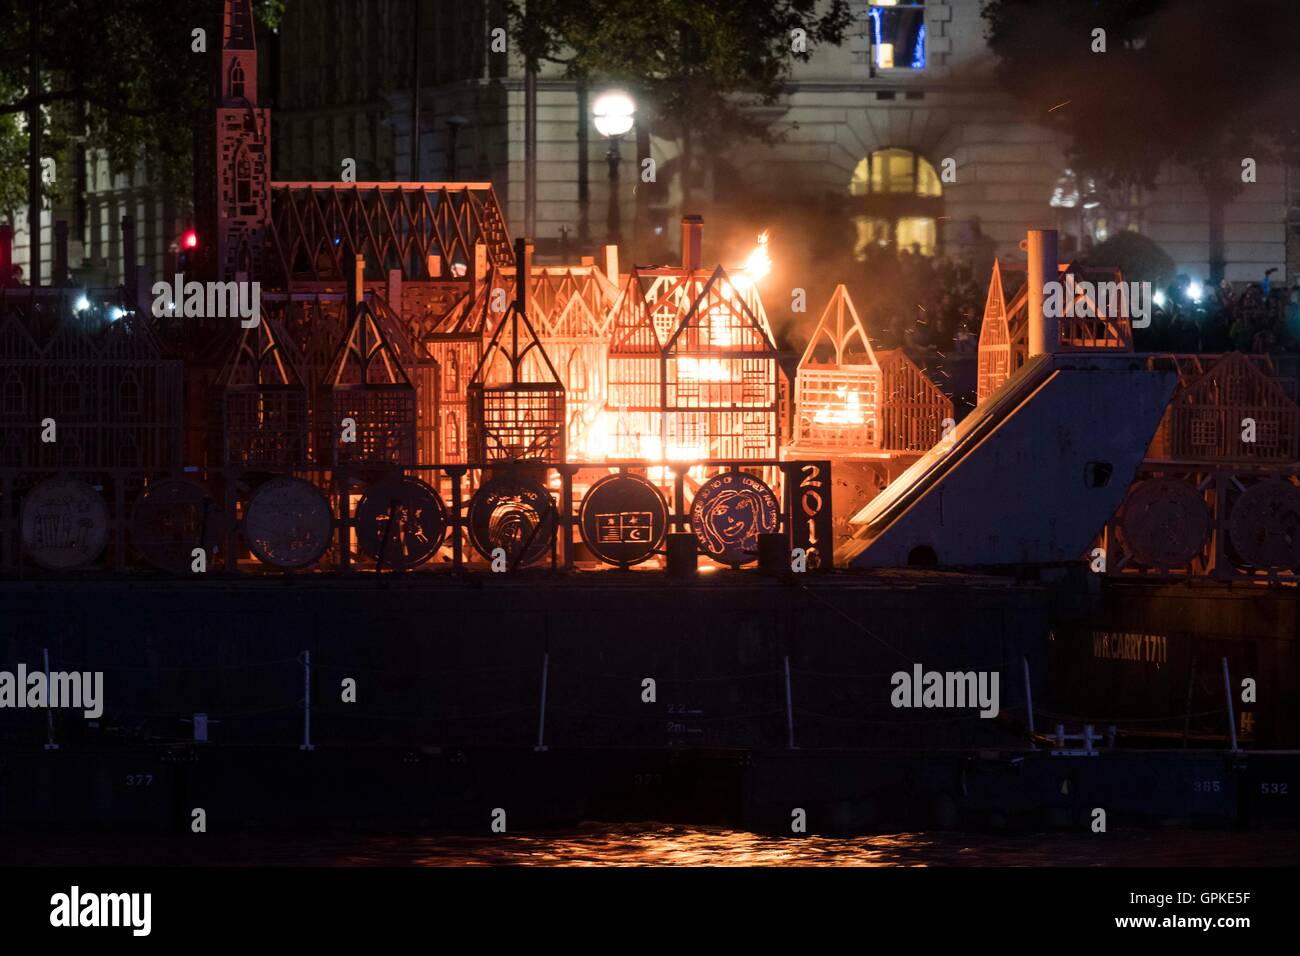 Londres, Grand Incendie de Londres qui a balayé le centre de Londres du 2 septembre. 12Th Mar, 1666. Londres 1666, un 120 mètres de long, la sculpture de la ville de Londres du 17ème siècle, est incendié à la banque de Thames, Londres, Grande-Bretagne le 4 septembre 2016. Londres 1666 a été incendié le dimanche soir. Cet événement faisait partie de la London's Burning festival produit par l'artichaut, qui commémore le grand incendie de Londres qui a balayé le centre de Londres du 2 septembre 1666 au 5 septembre 1666. © Ray Tang/Xinhua/Alamy Live News Banque D'Images